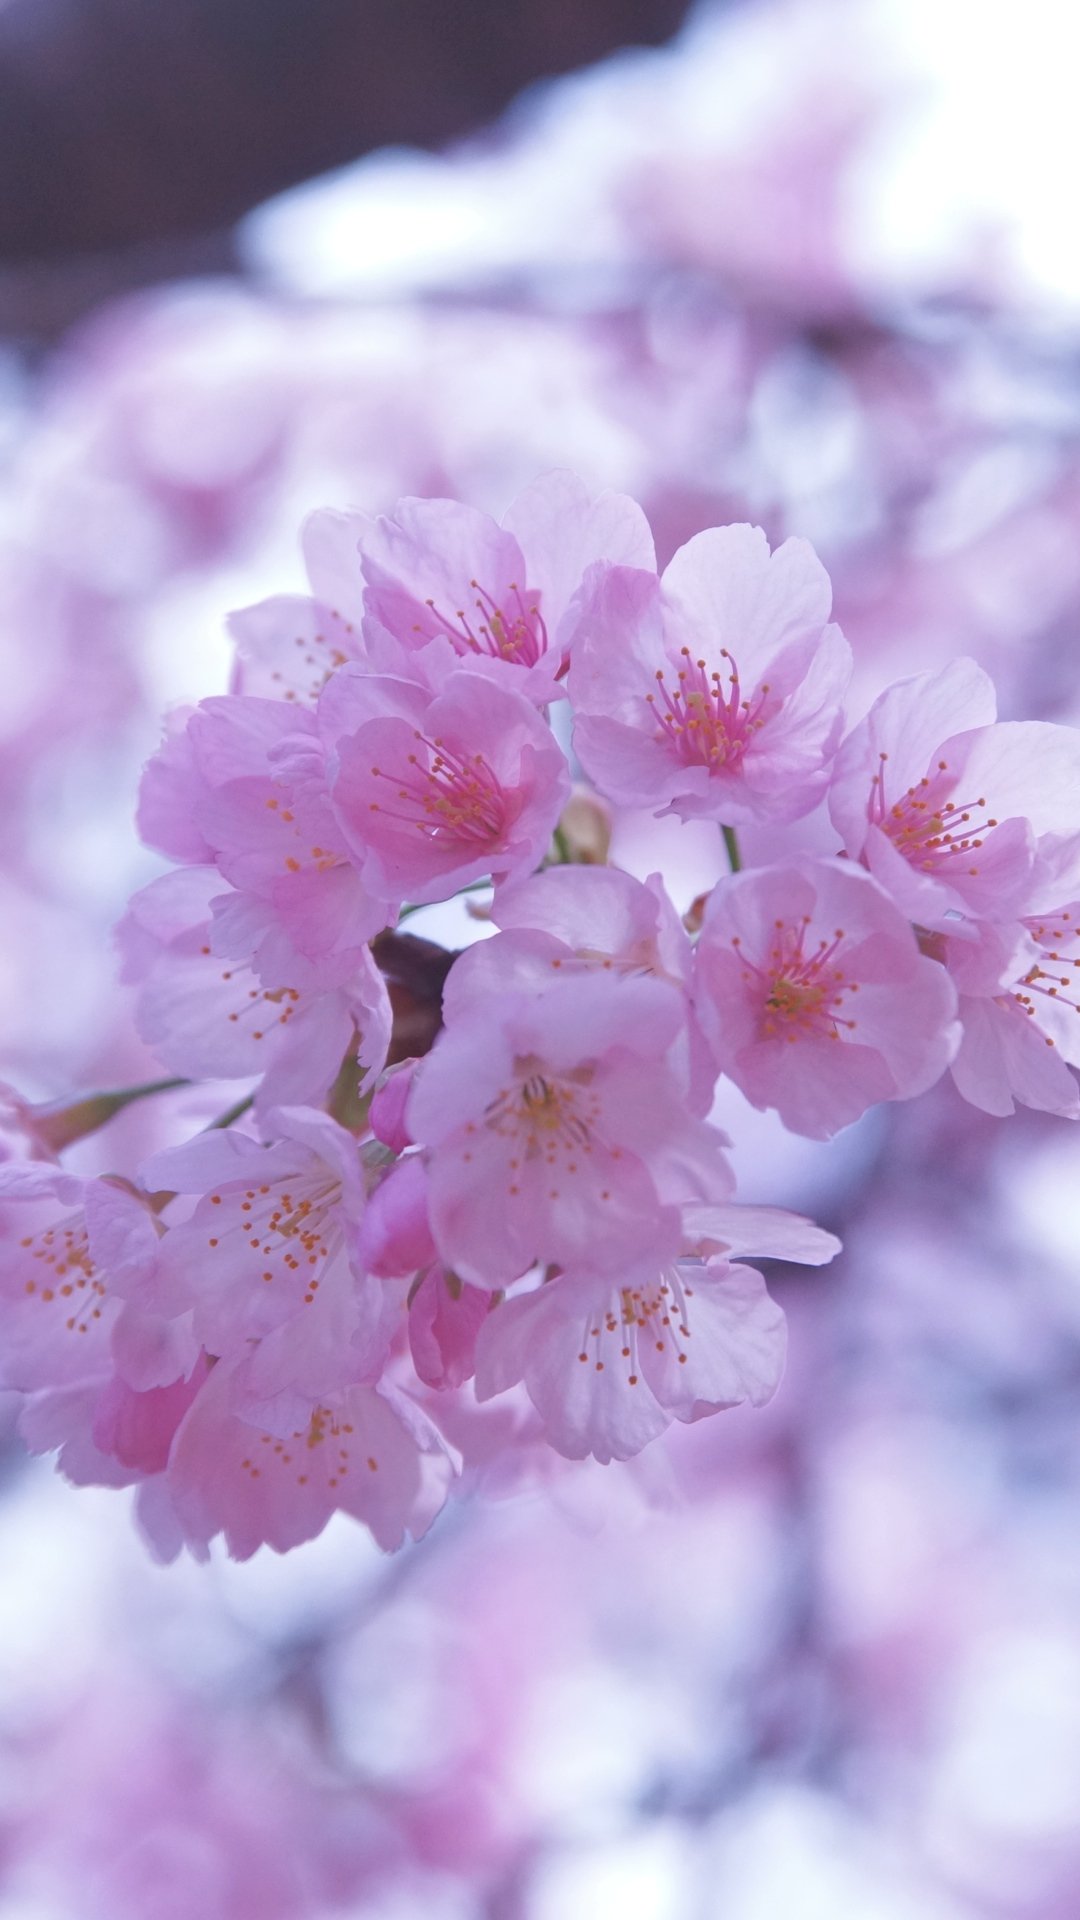 壁紙 スマホ 桜 おしゃれ スマホ 壁紙 桜 最高のディズニー画像